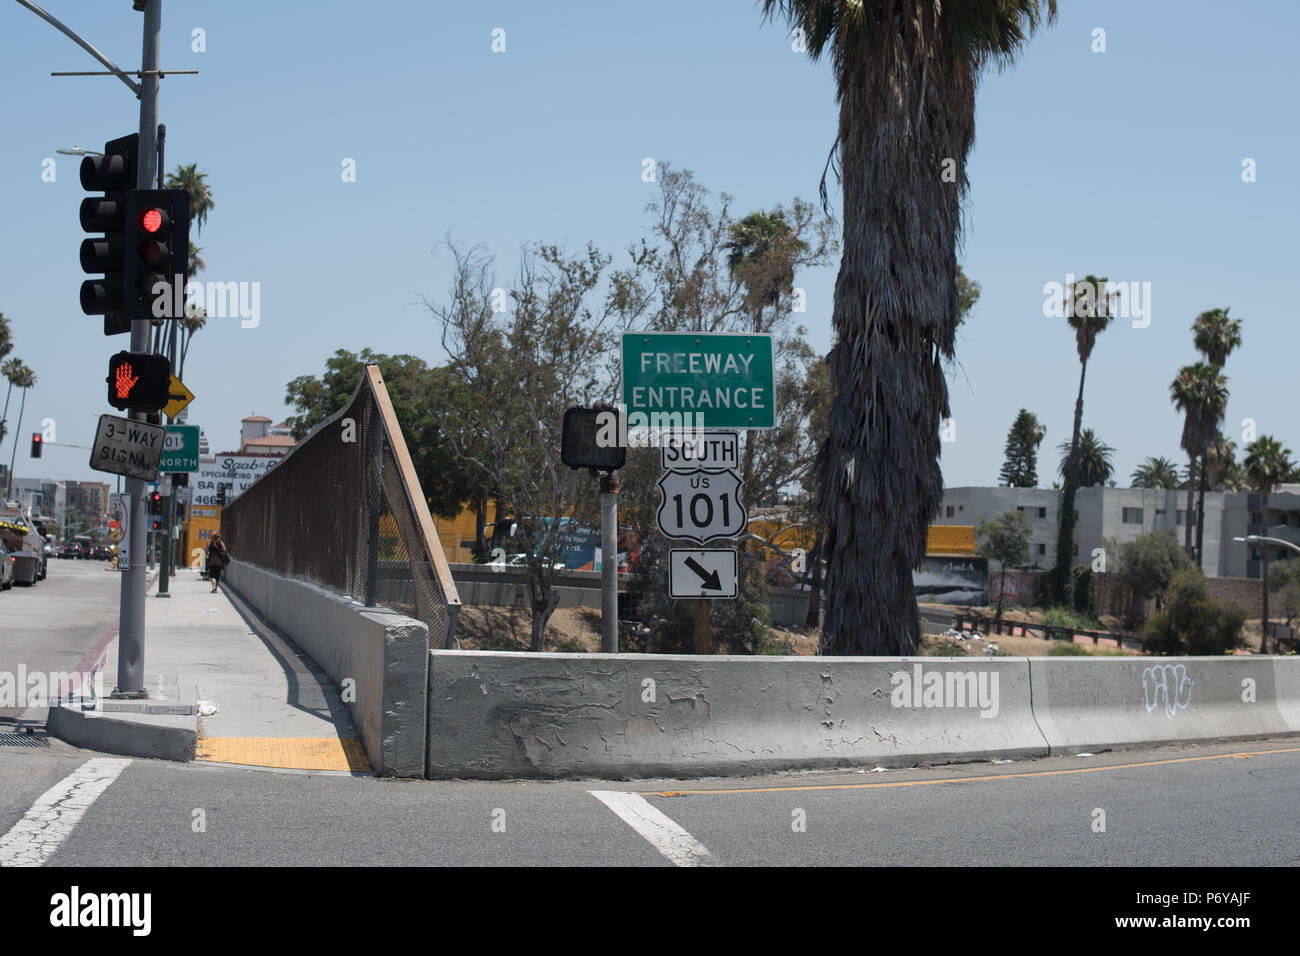 Los Angeles, Stati Uniti d'America - 29 Giugno: casuale non identificato le persone nelle strade del centro cittadino di Los Angeles, CA il 29 giugno 2018. Foto Stock